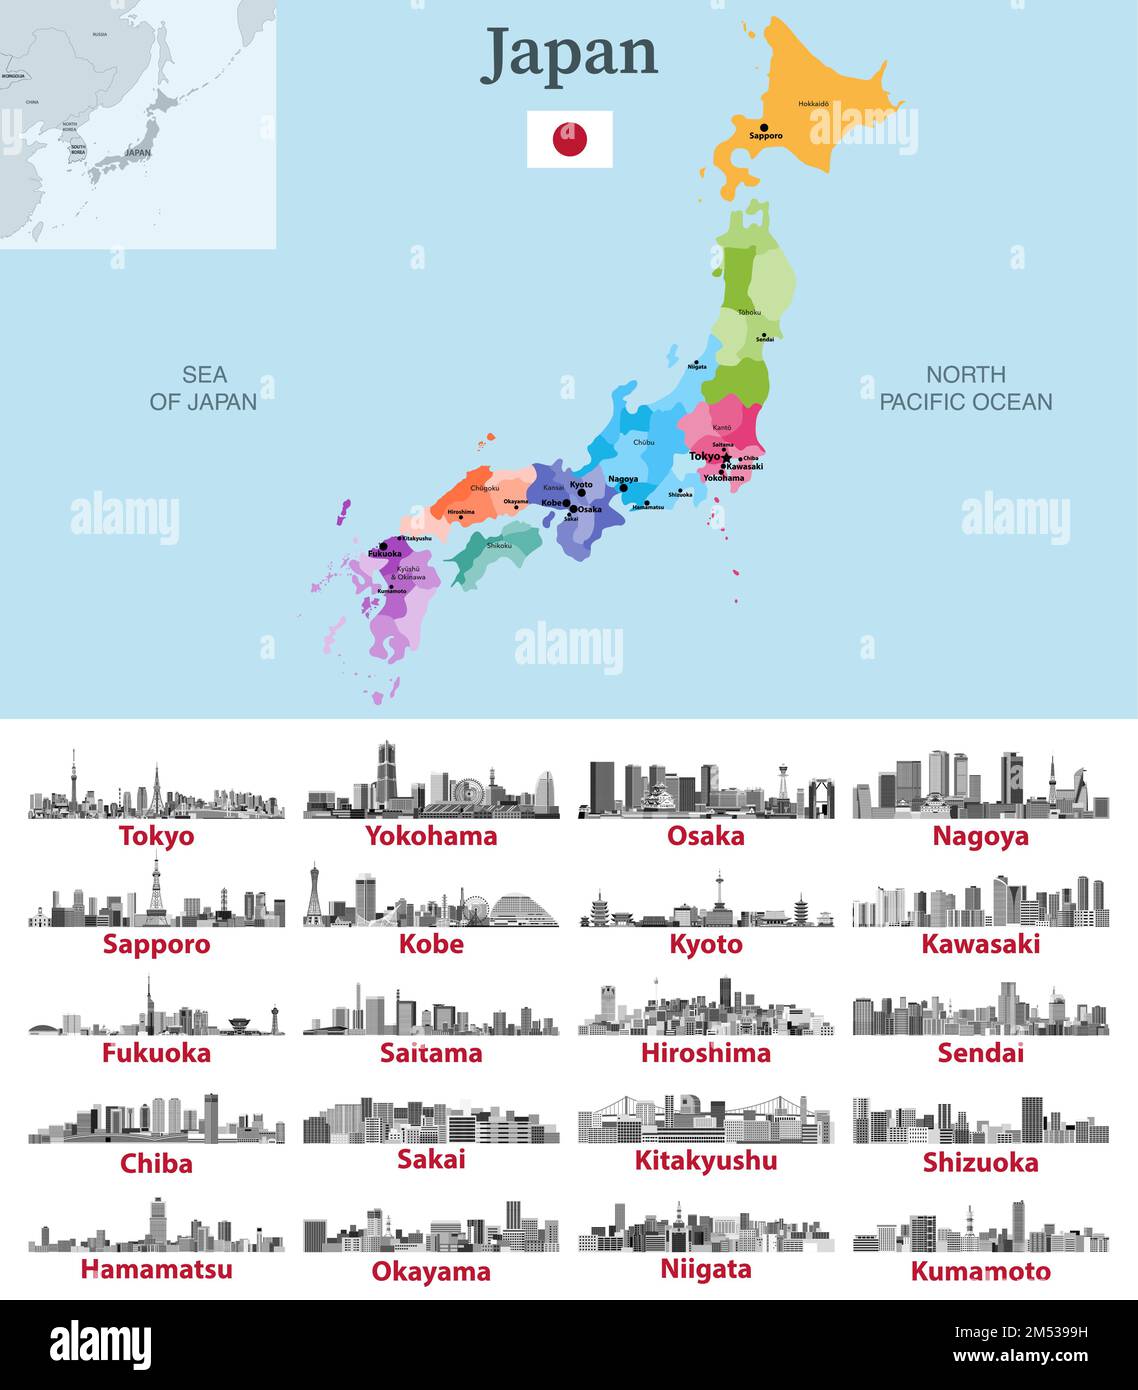 Karte Japans mit den wichtigsten Städten. Illustrationen der japanischen Skylines in Schwarz und Weiß. Vektorsatz Stock Vektor